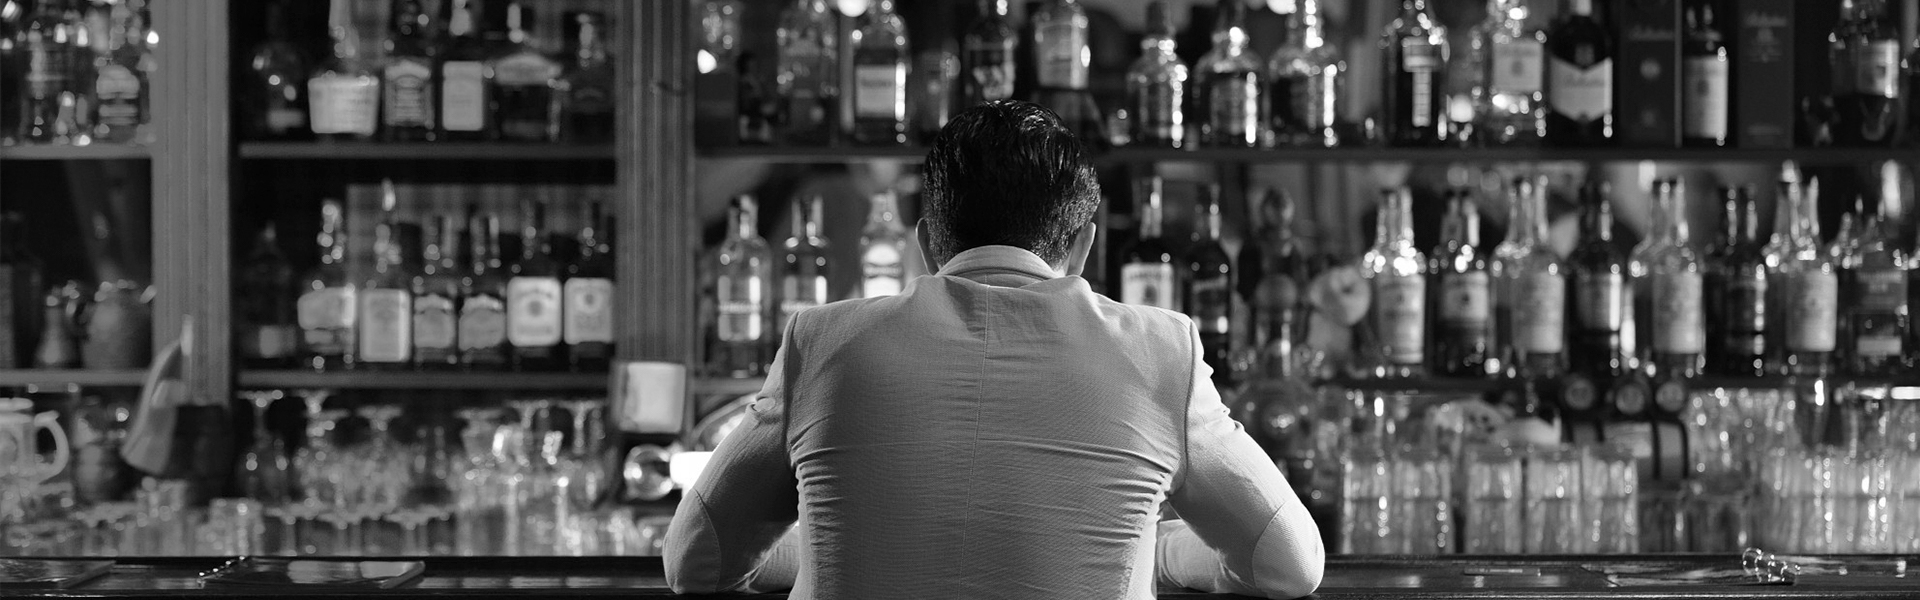 Un hombre en la barra de un bar.